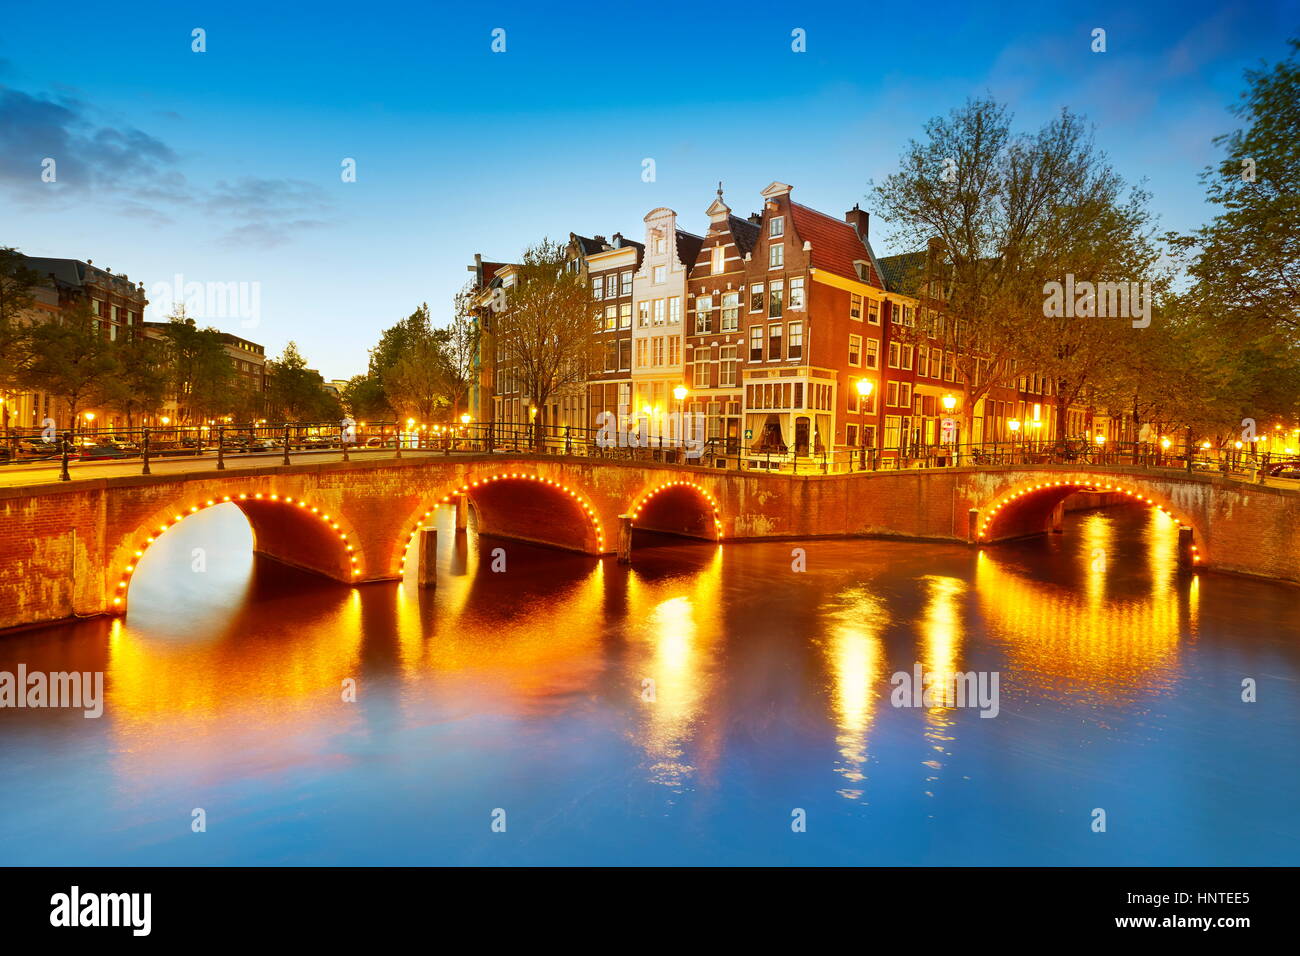 Soirée à canaux d'Amsterdam - Hollande, Pays-Bas Banque D'Images